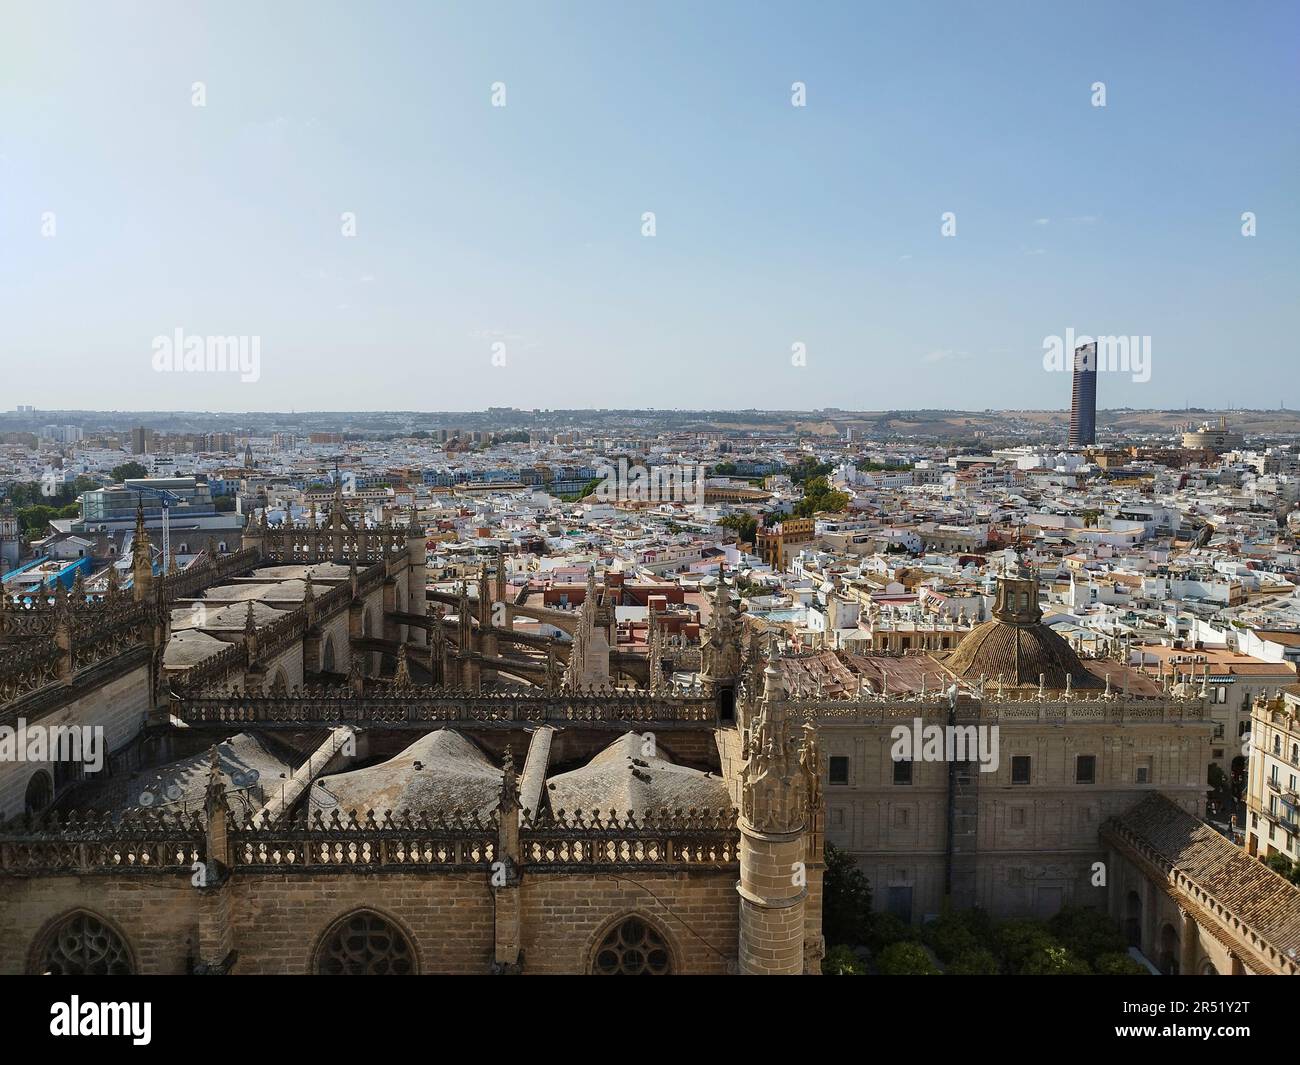 Ein Blick auf die Kathedrale von Sevilla oder die Kathedrale von Sevilla, die größte gotische Kathedrale, von oben auf die Kathedrale, während Sie die Stadt Sevilla betrachten Stockfoto